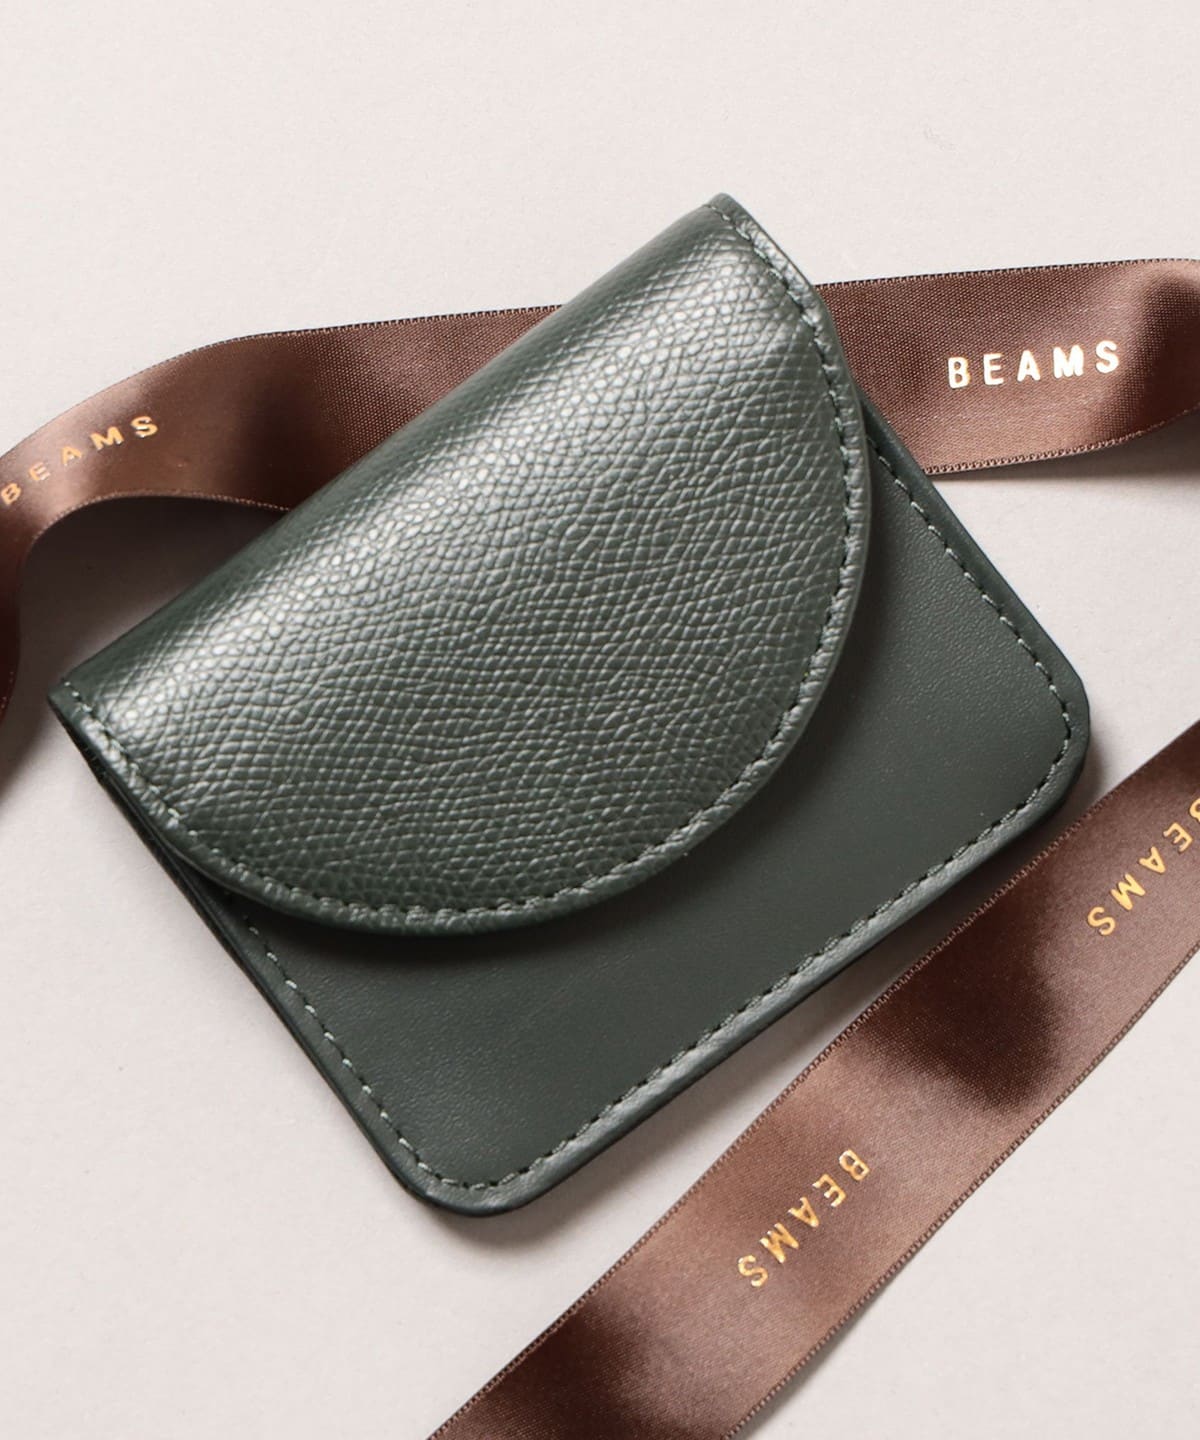 BEAMS BEAMS BEAMS Combi Compact Wallet (Wallet/Accessories